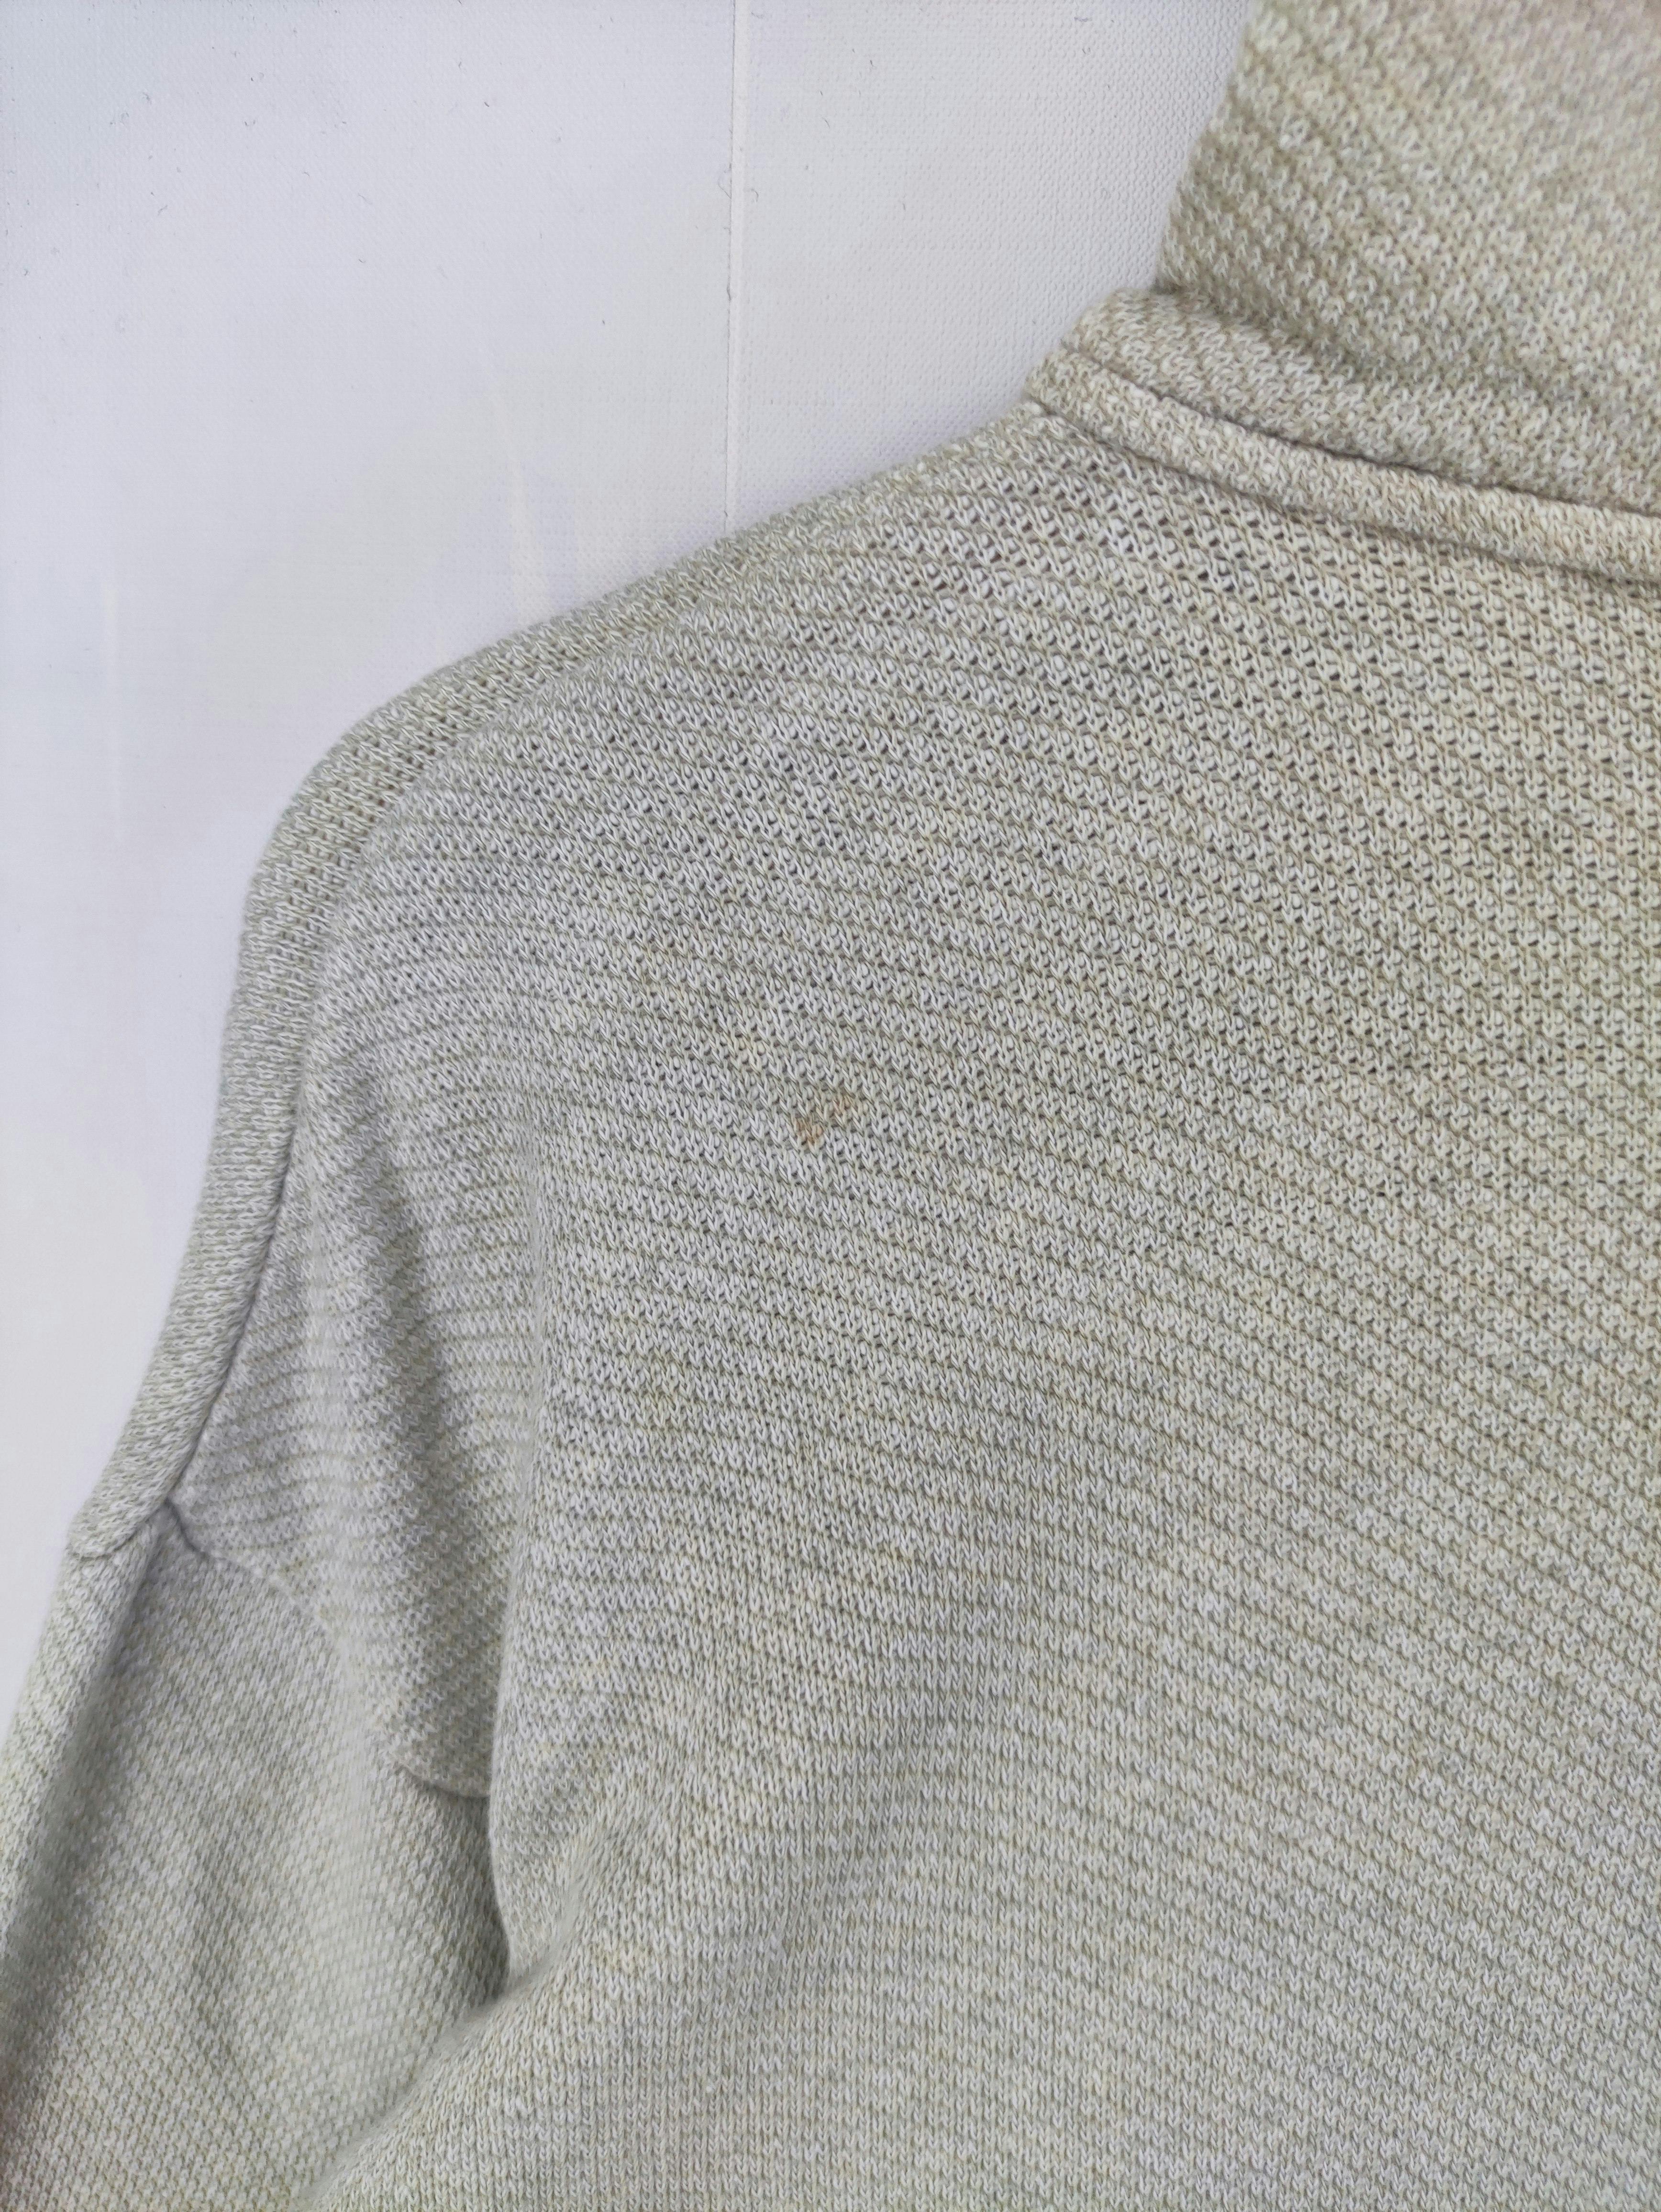 Vintage 45 Rpm Indigo Sweater Hoodie Zipper - 12